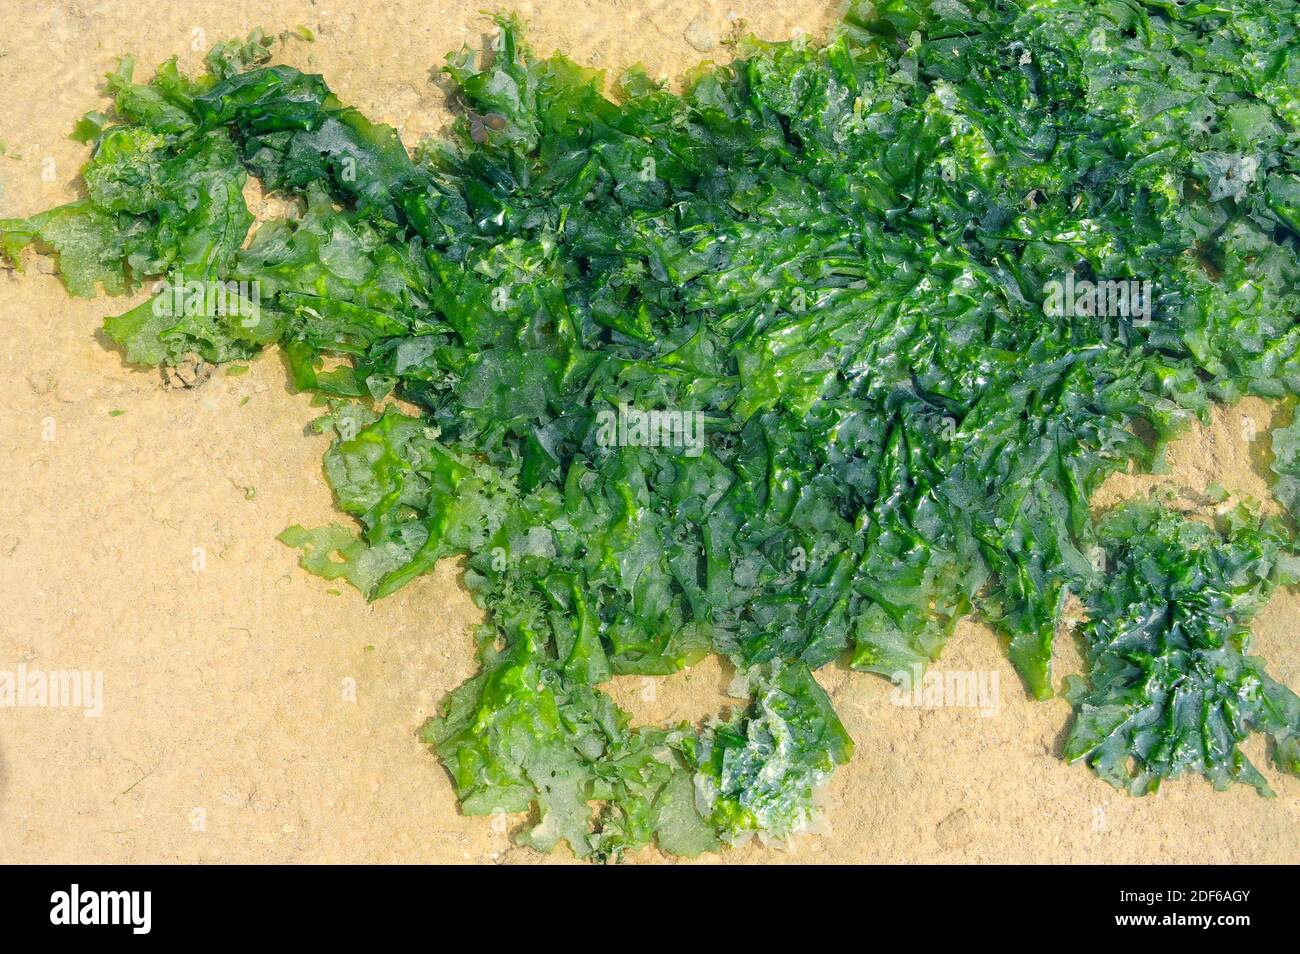 La lechuga de mar (Ulva lactuca) es un alga verde comestible de distribución mundial. Clorofita. Ulvales. Ulvaceae. Costa de Bretaña, Francia. Foto de stock